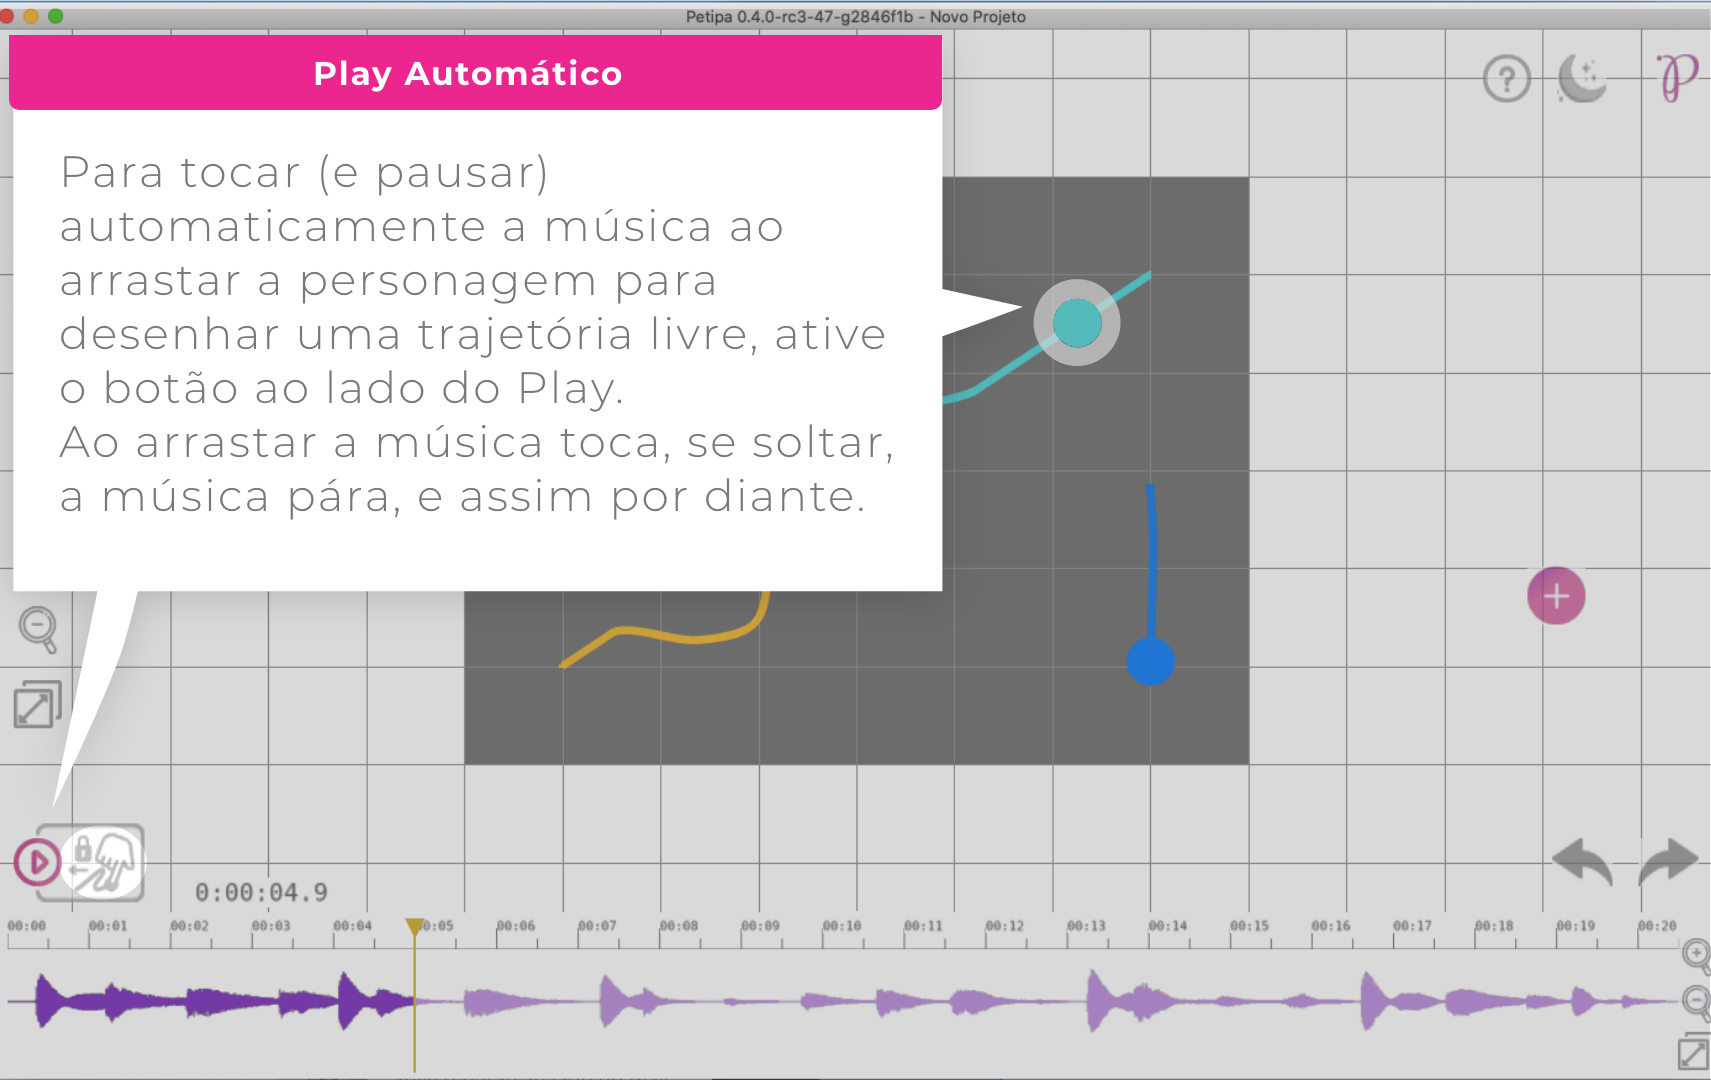 Para trocar (e pausar) automaticamente a musica ao arrastar a personagem para desenhar uma trajetória livre, ative o botão do lado do Play (no canto inferior a esquerda, acima das timelines).